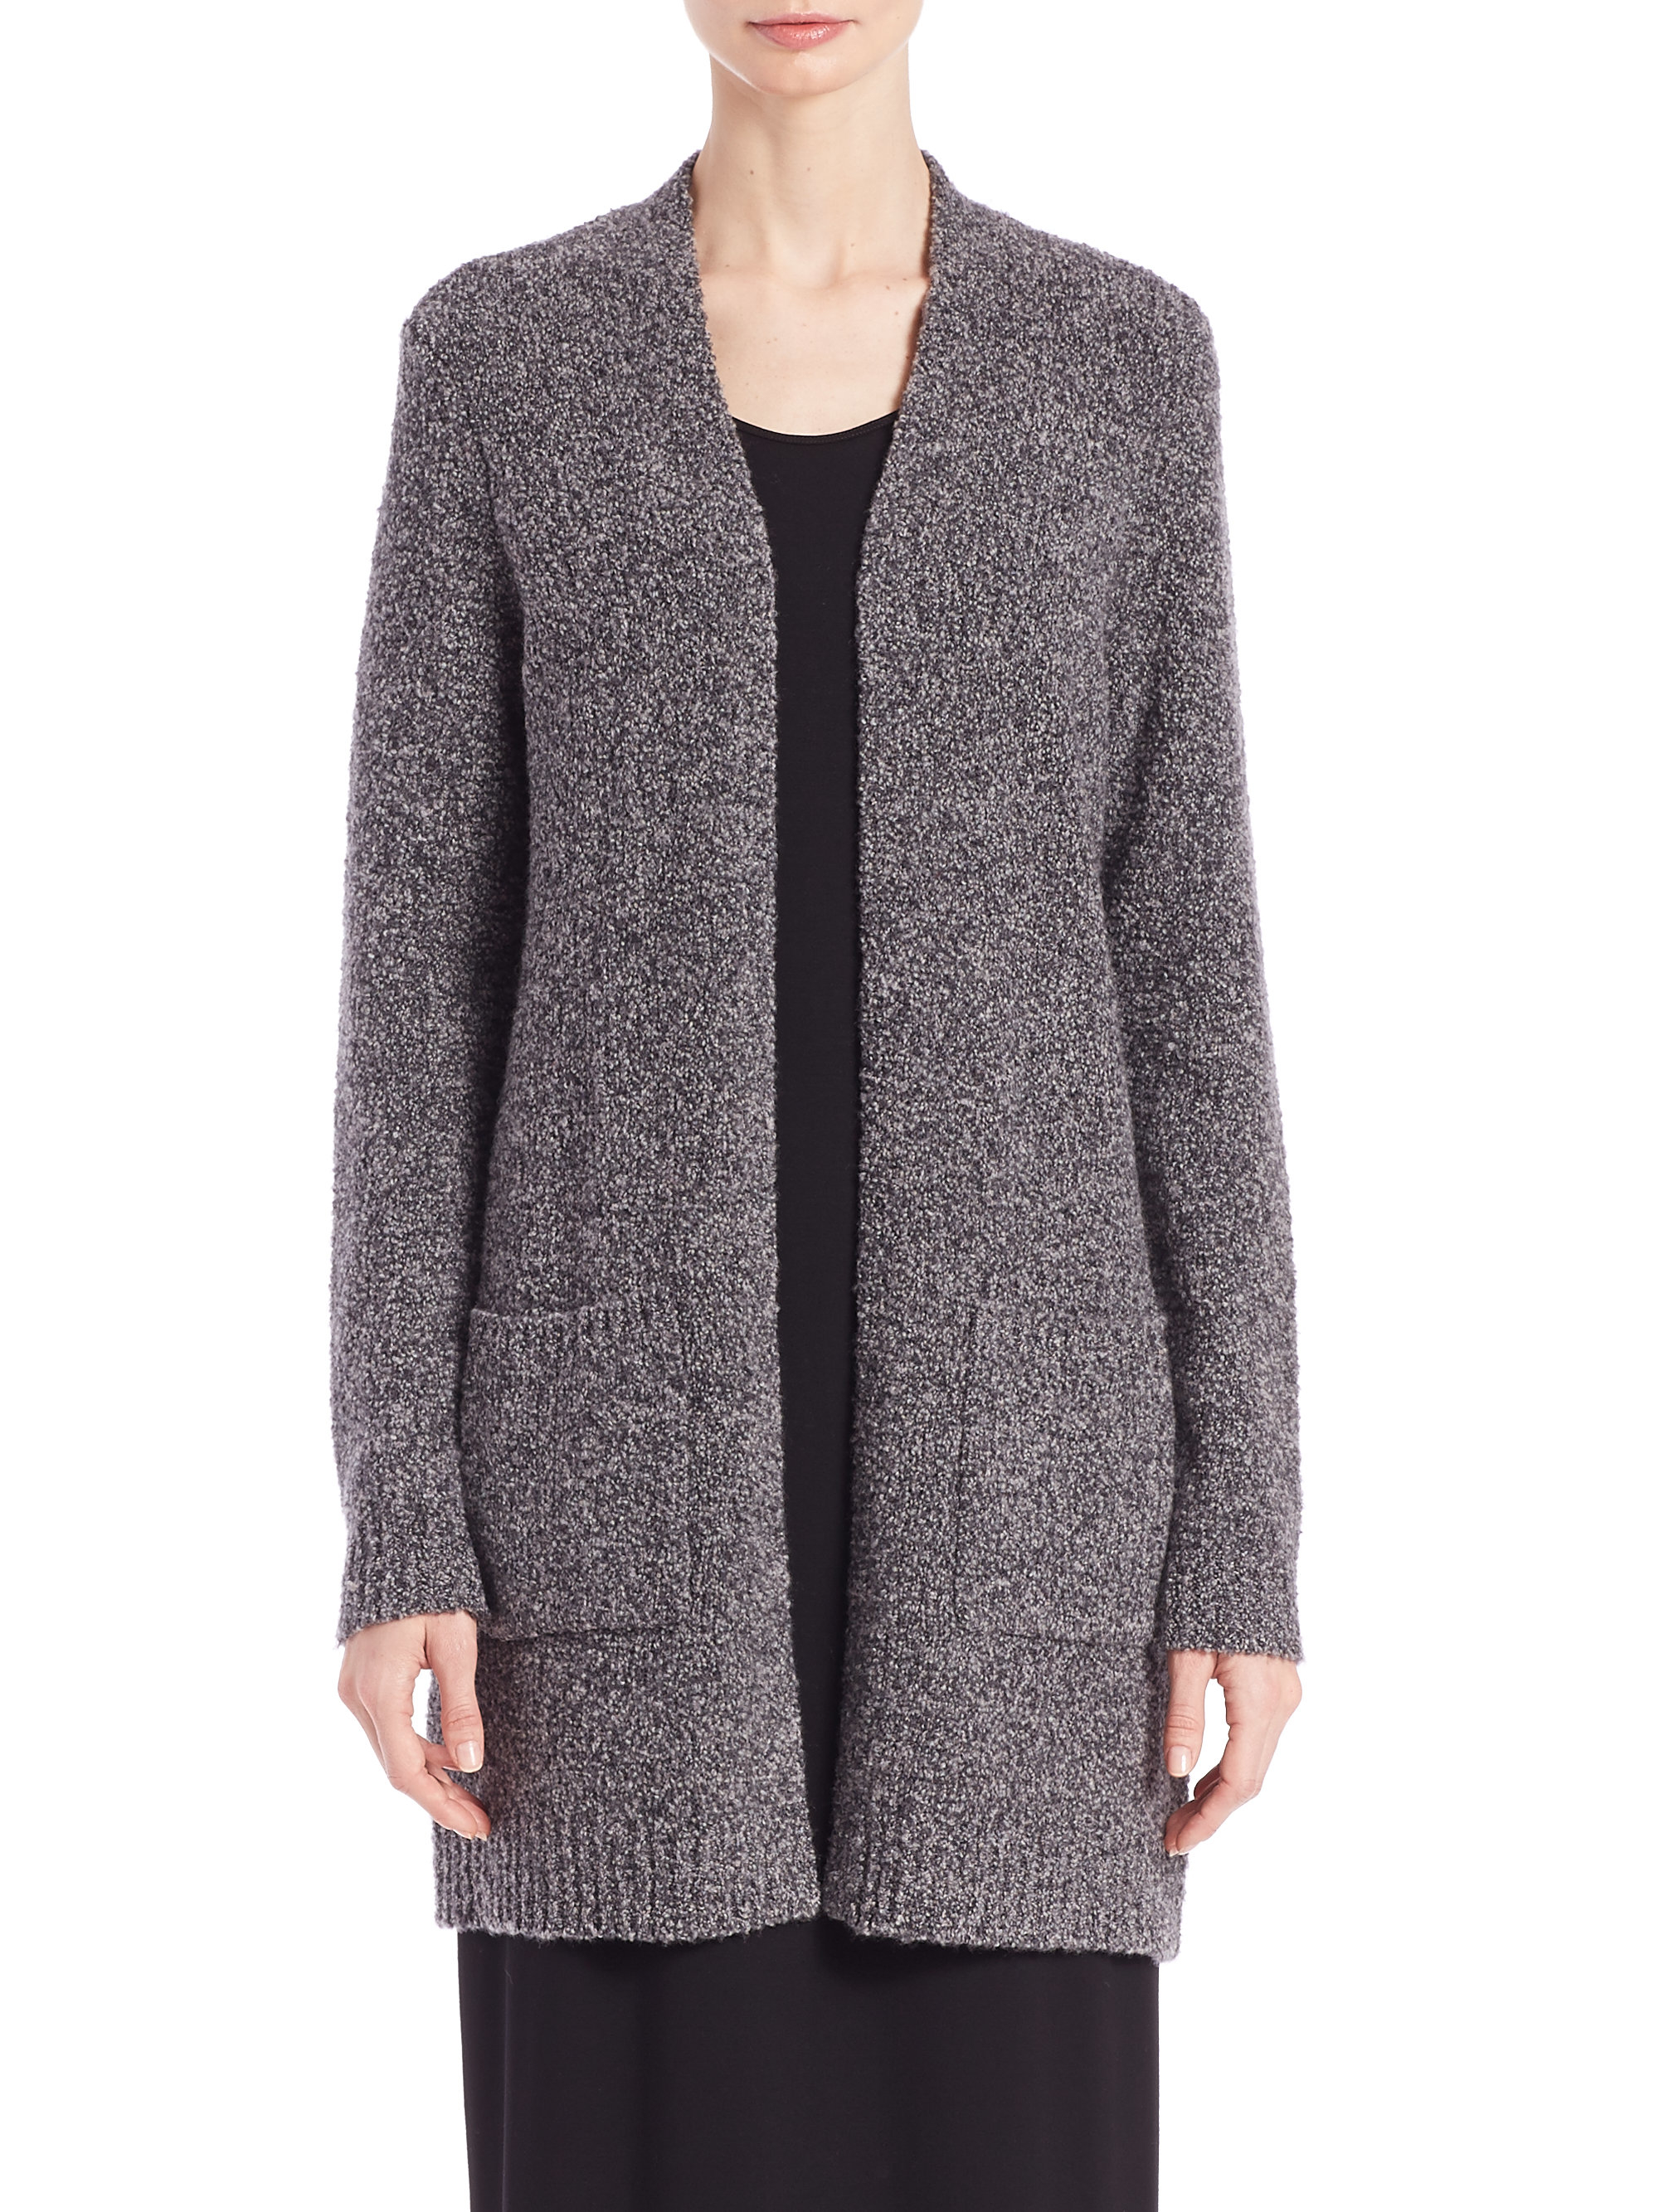 Eileen fisher Merino Wool-blend Long Cardigan in Gray | Lyst